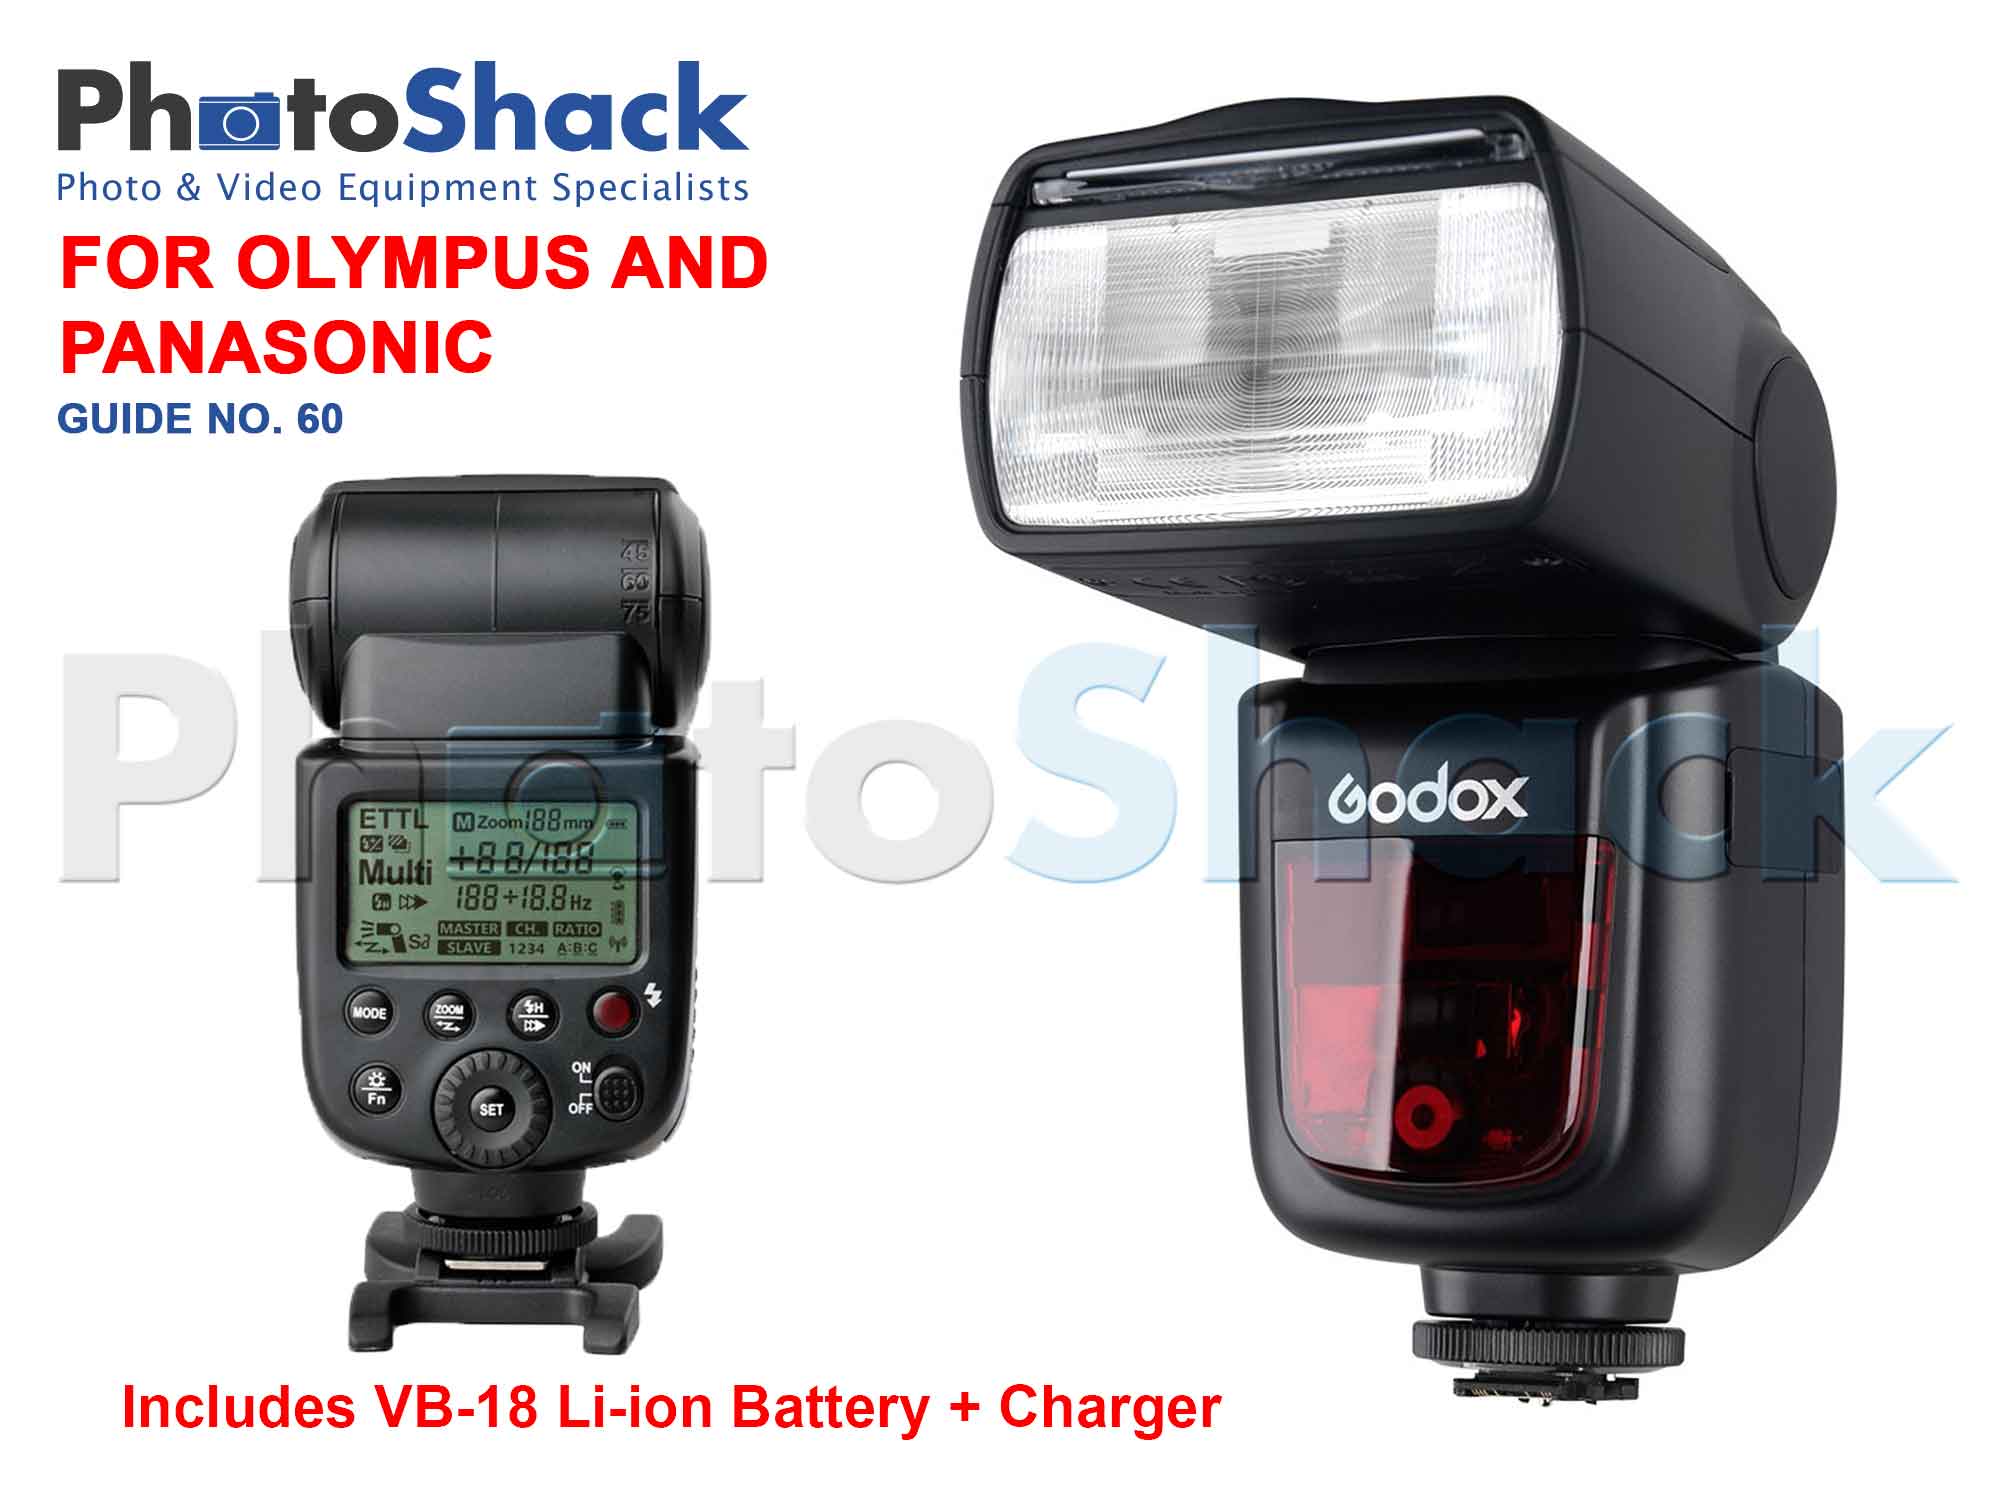 Godox V860II TTL Camera Flash for Panasonic / Olympus